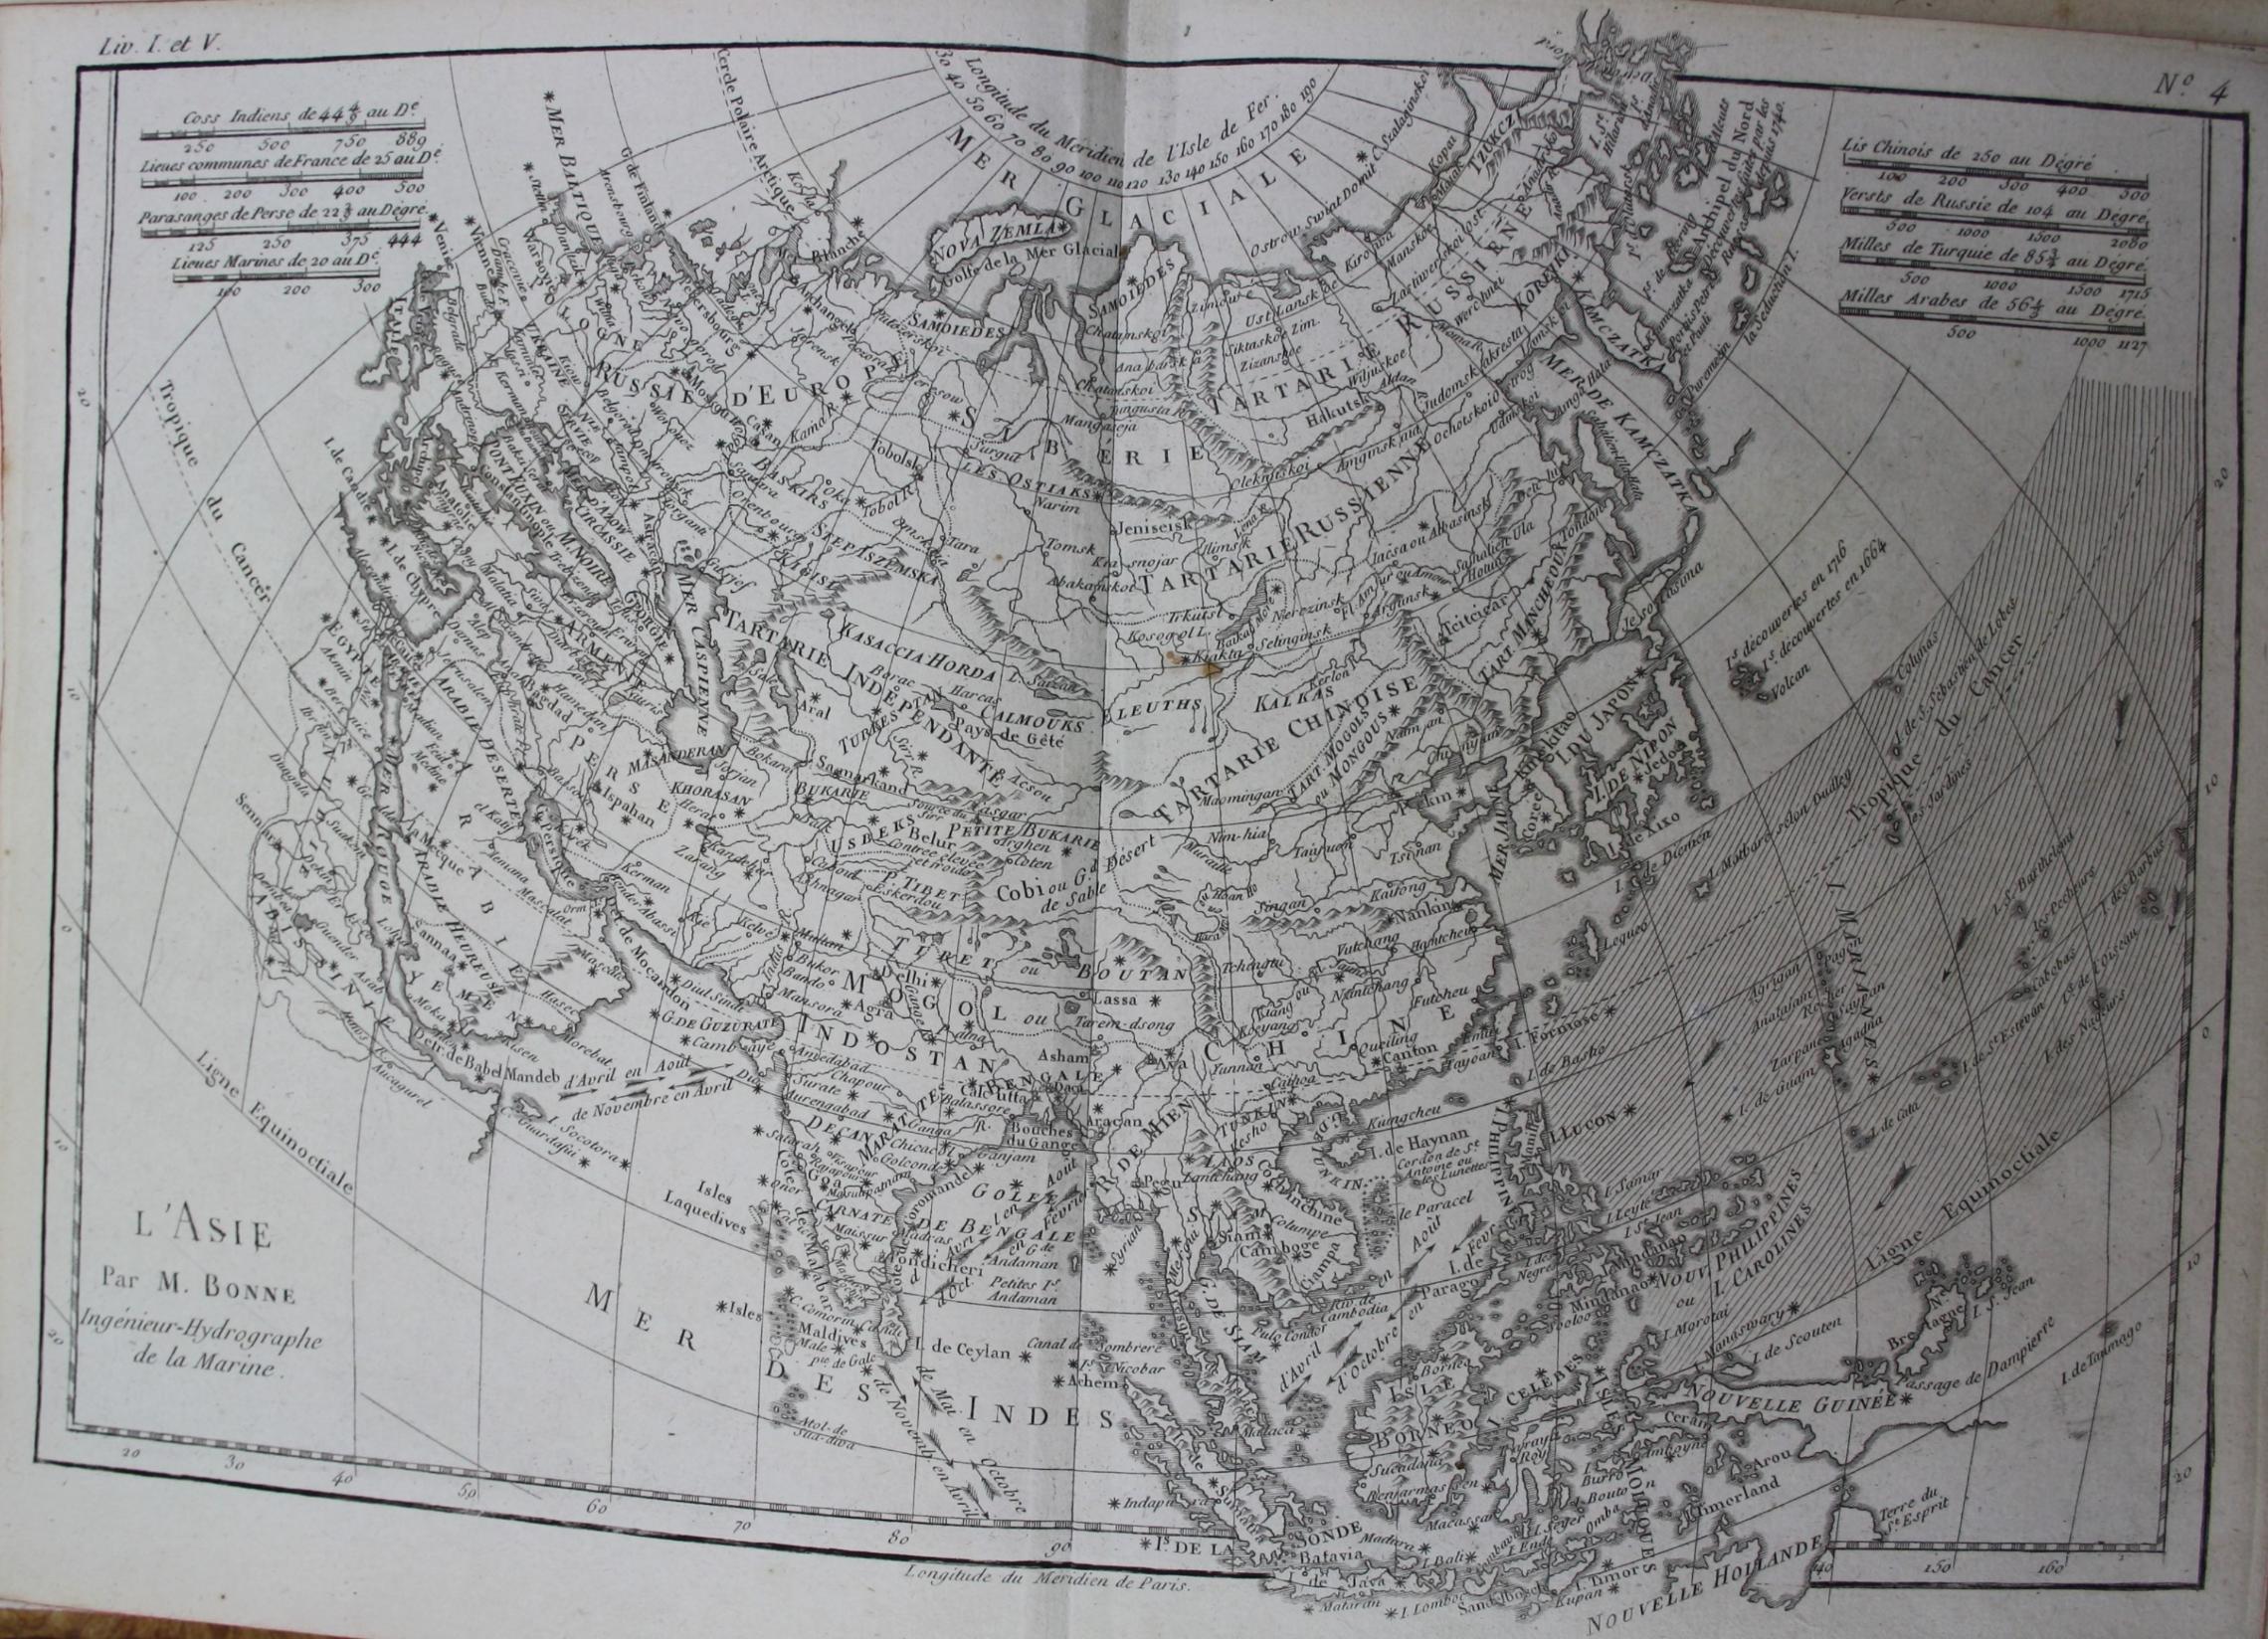 360-Grad Karte von China - Atlas de Toutes les Parties Connues Du Globe Terrestre ... Du Commerce Des Européenes les Deux Indes Gèneve 1780 (Martinus-Bibliothek Mainz, 13/1078) (c) Martinus-Bibliothek